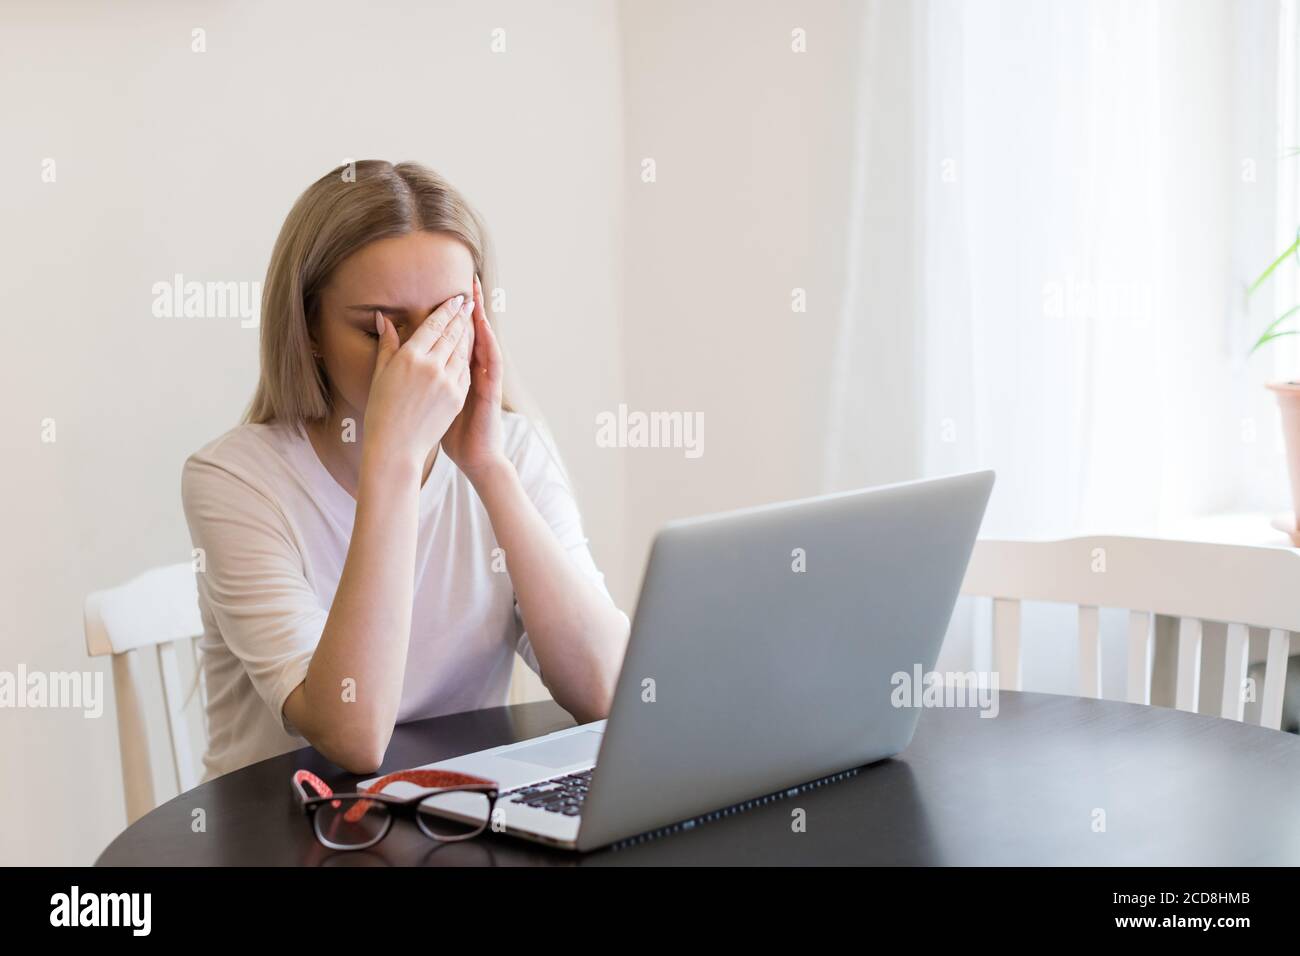 Fatiga, trabajo excesivo, cansancio. Mujer exhausta tiene un dolor de cabeza después de trabajar en el ordenador portátil, tocándola los ojos, tratando de concentrarse, sentada junto a la mesa Foto de stock